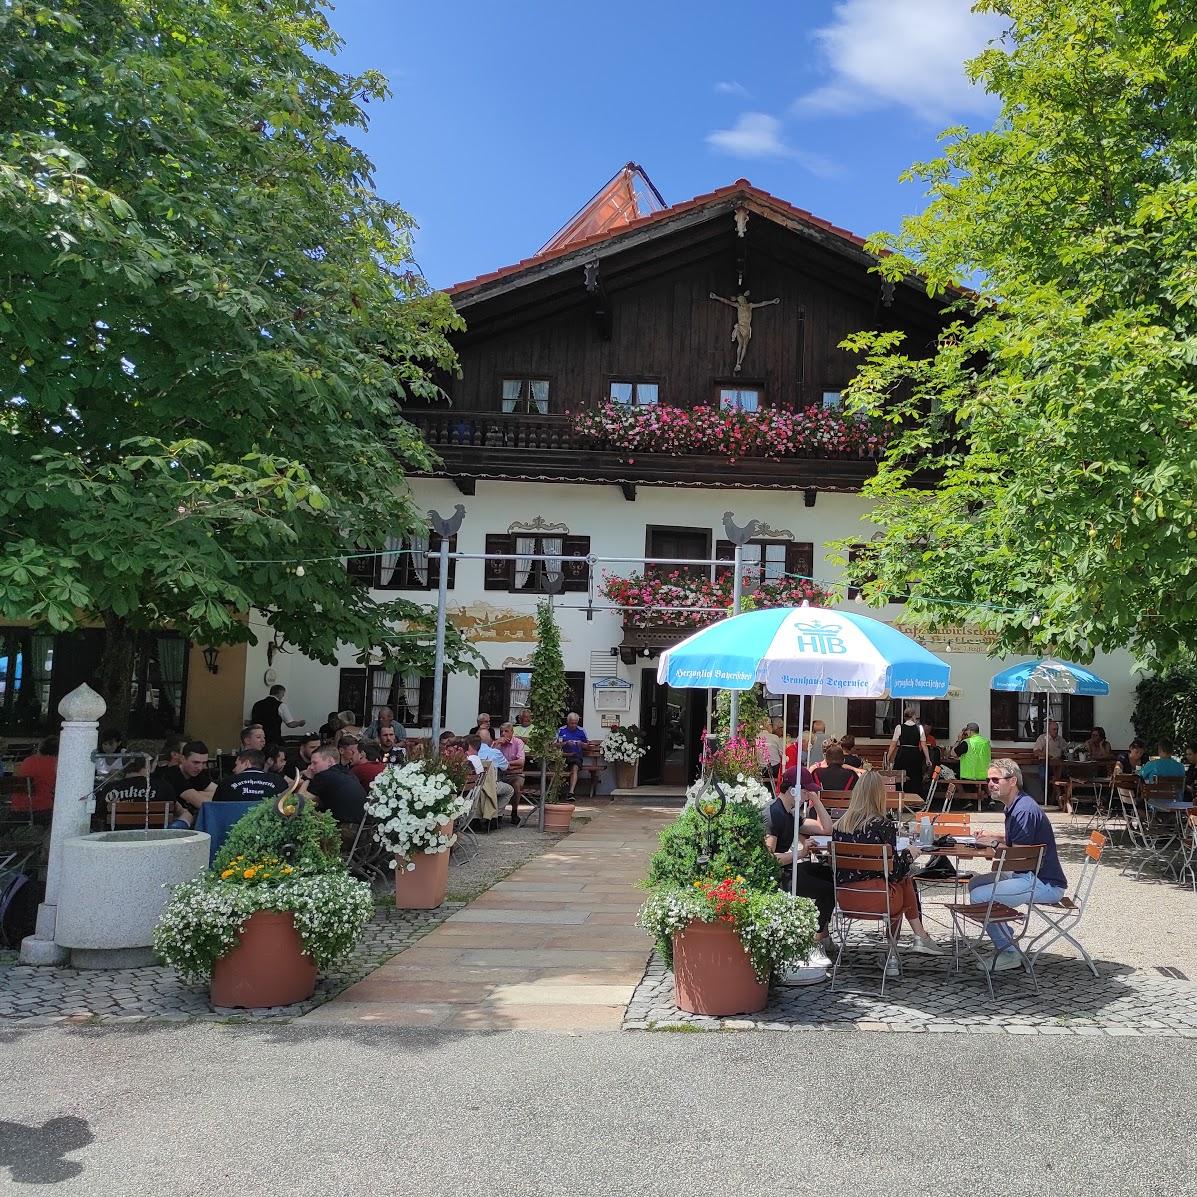 Restaurant "Kistlerwirt" in Bad Feilnbach